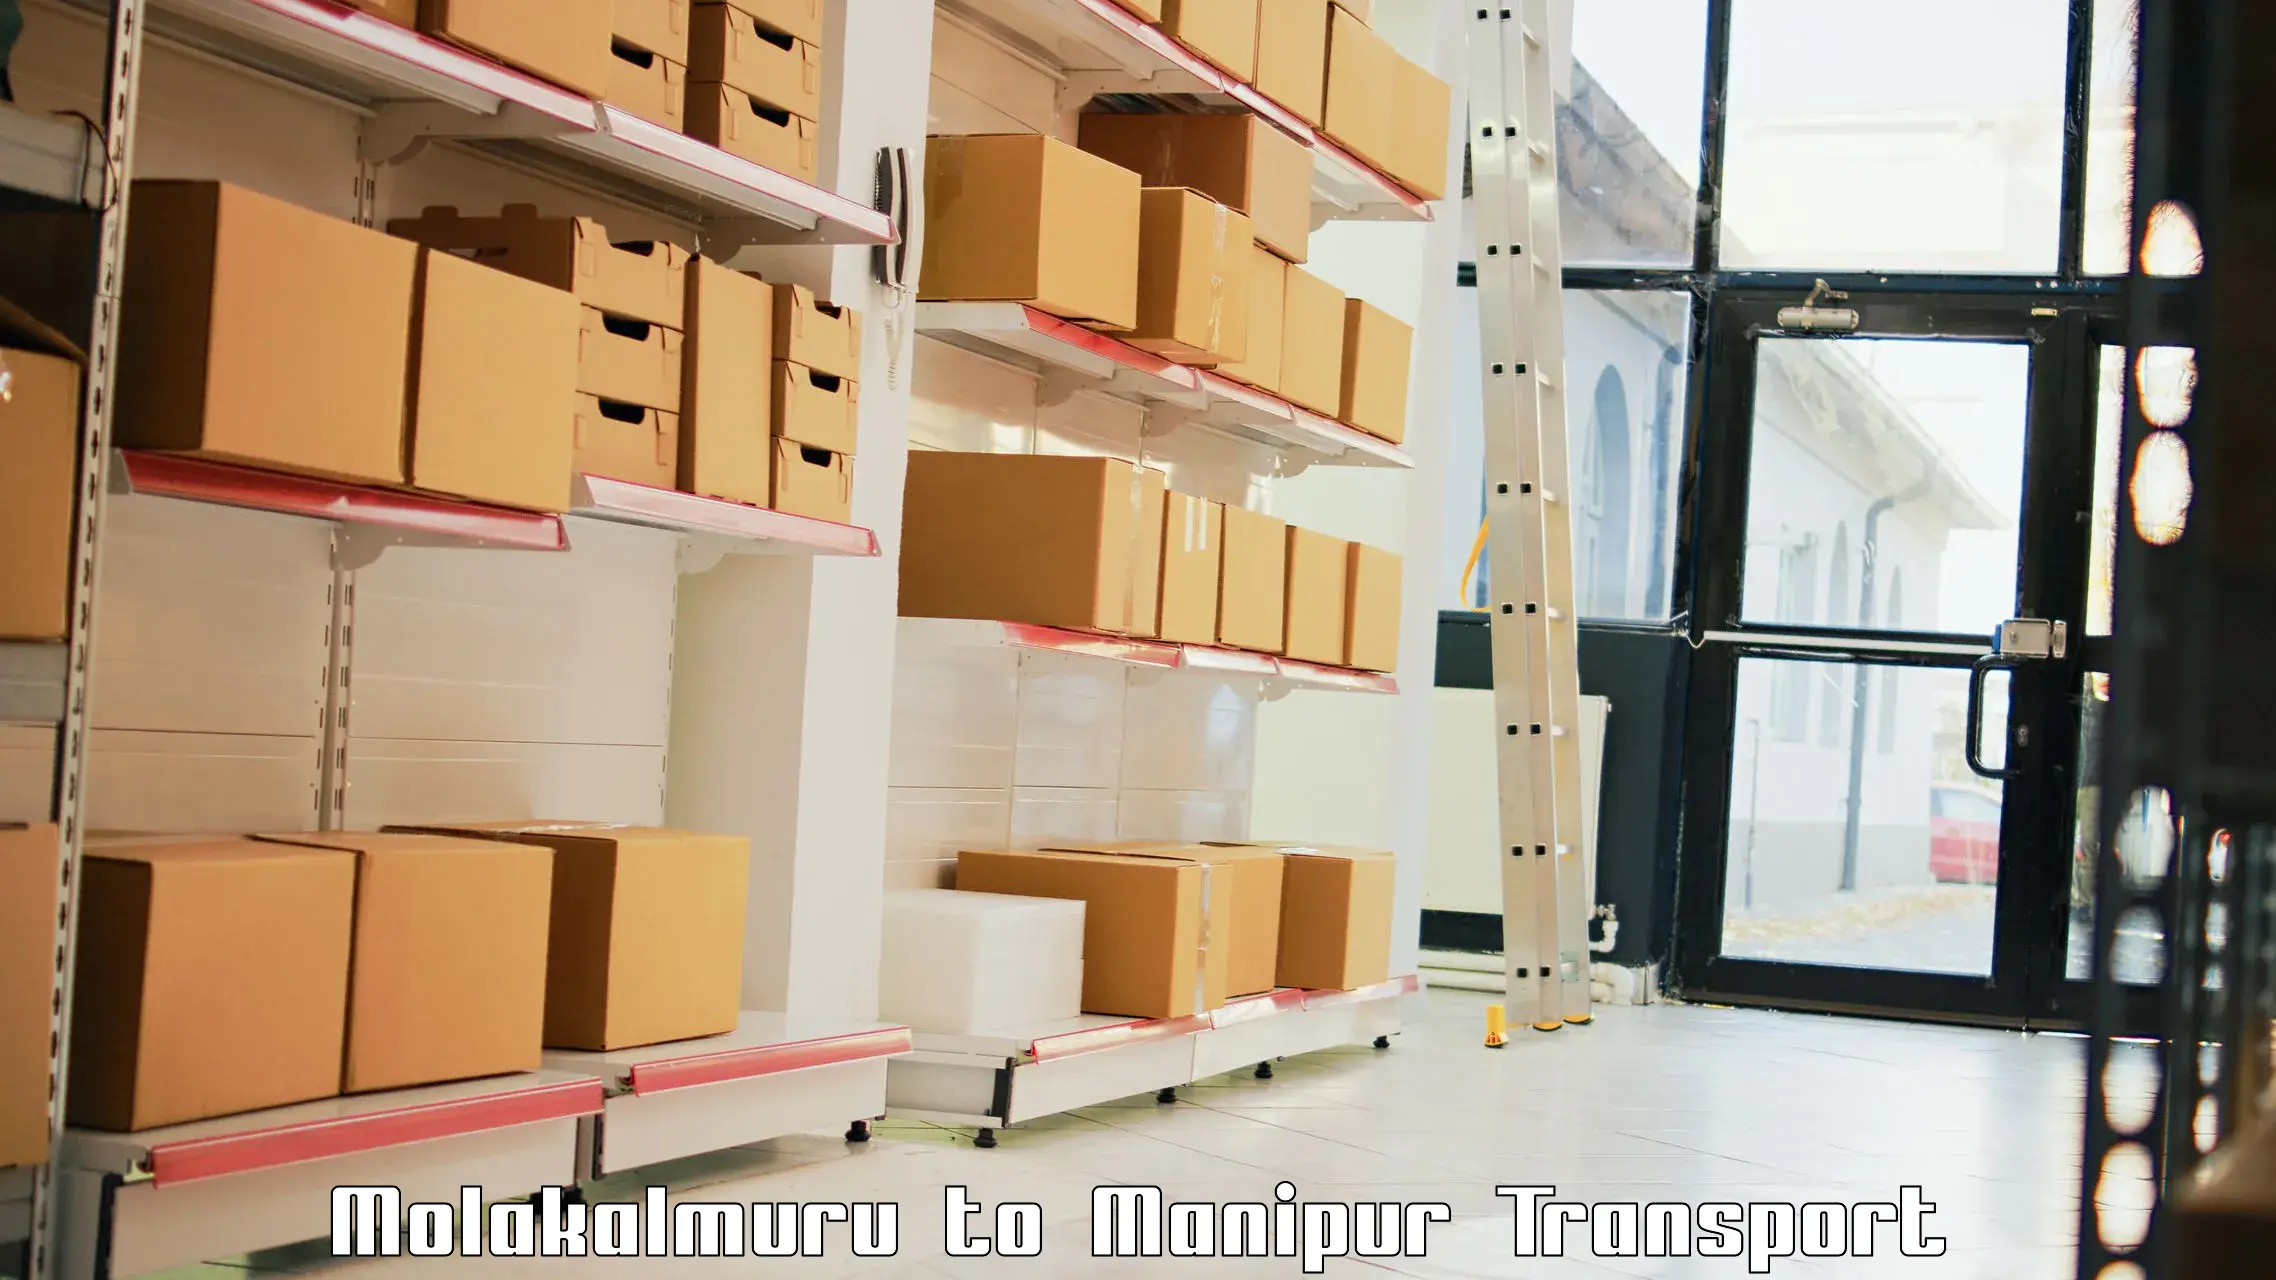 Online transport booking Molakalmuru to NIT Manipur